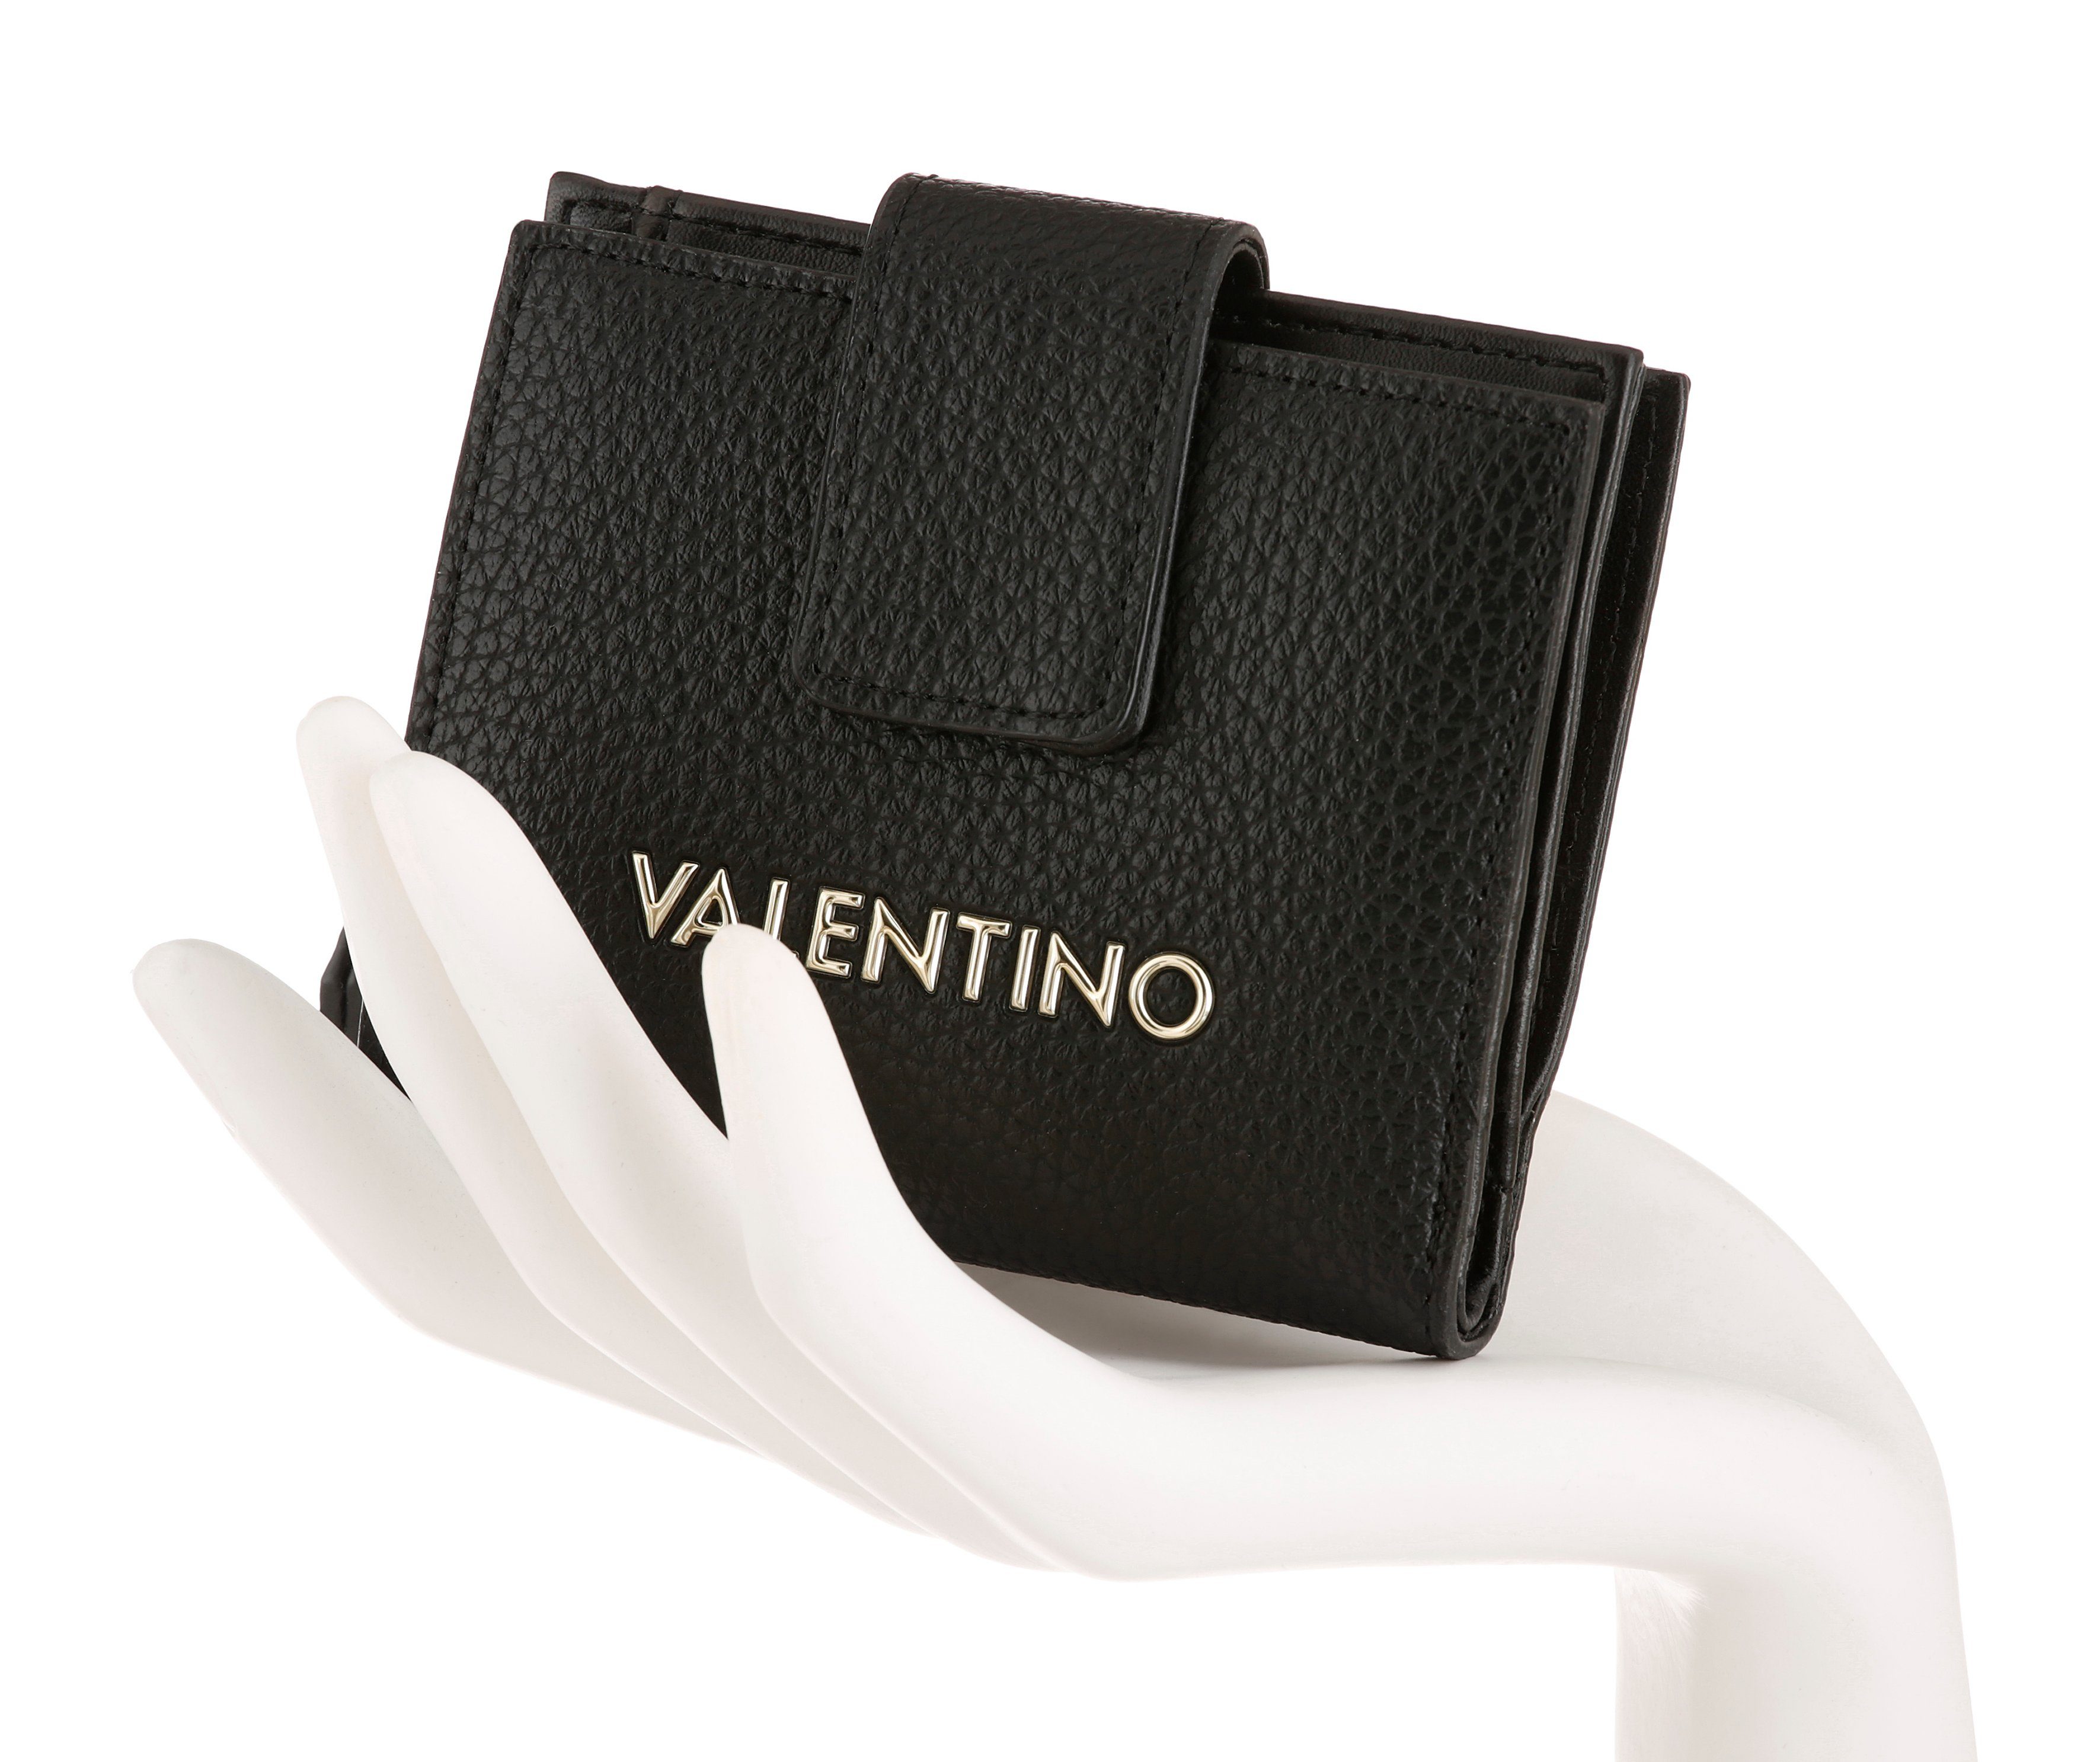 VALENTINO BAGS praktischen Geldbörse Format ALEXIA, schwarz im